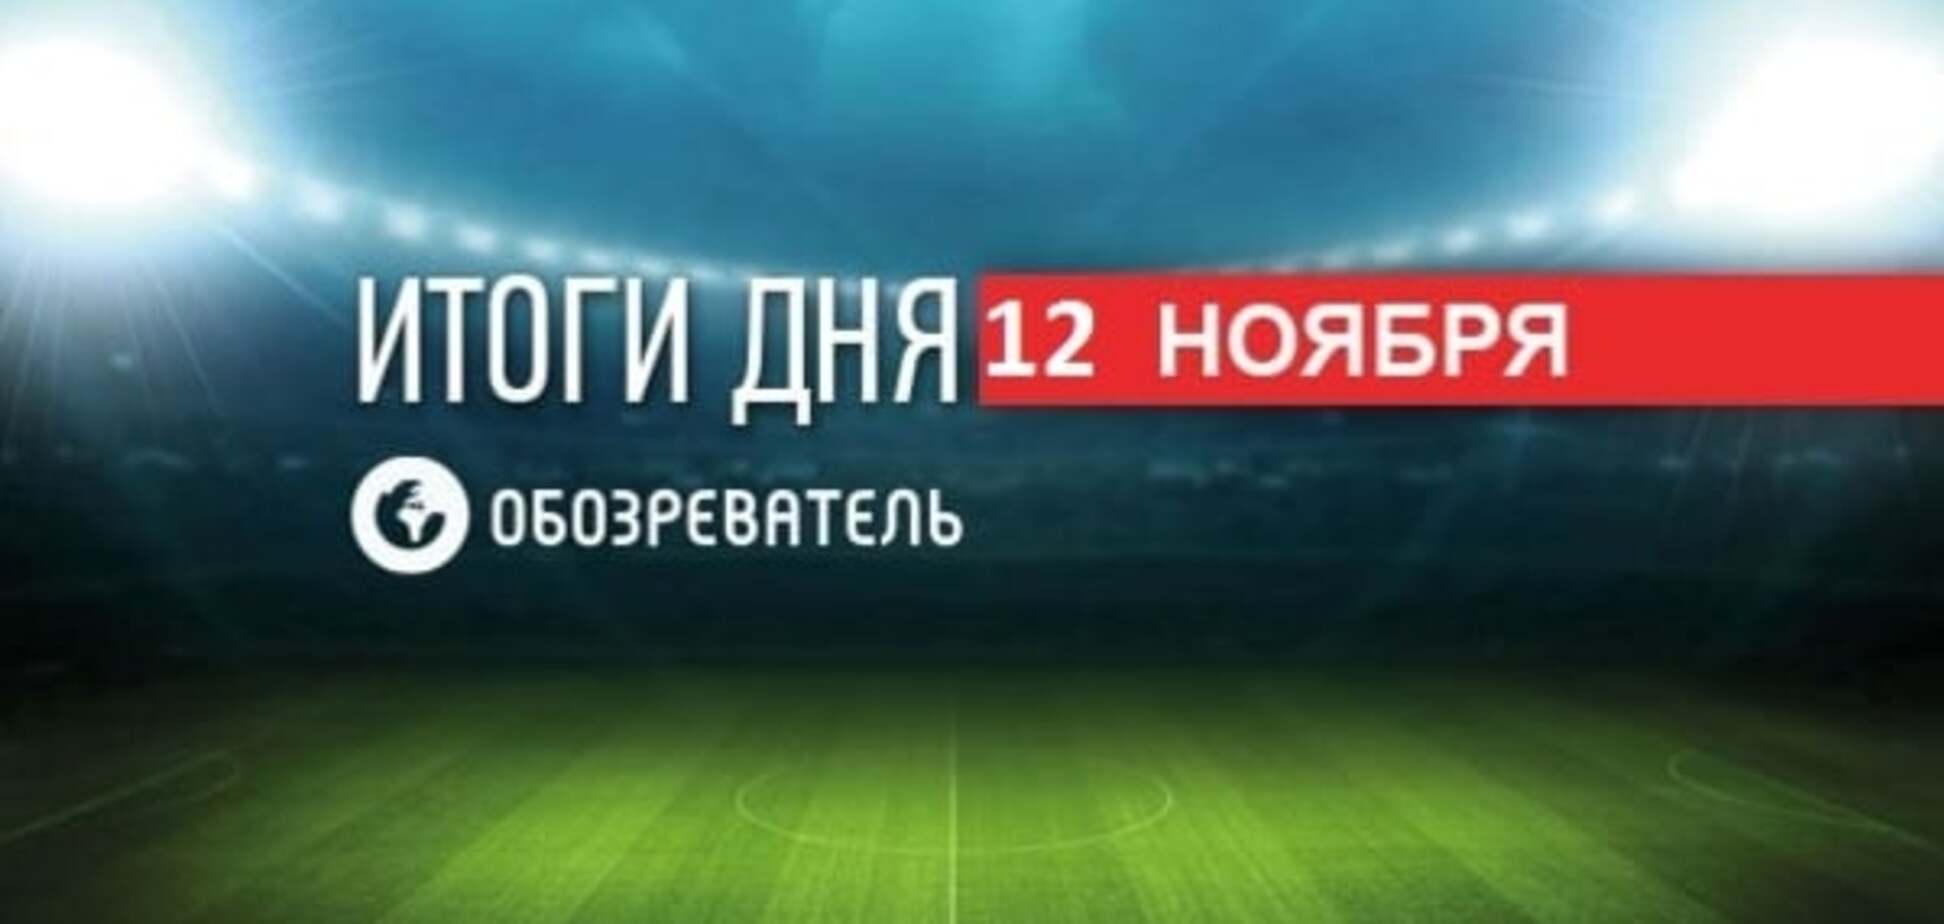 'Динамо' сделало громкое заявление. Спортивные итоги 12 октября